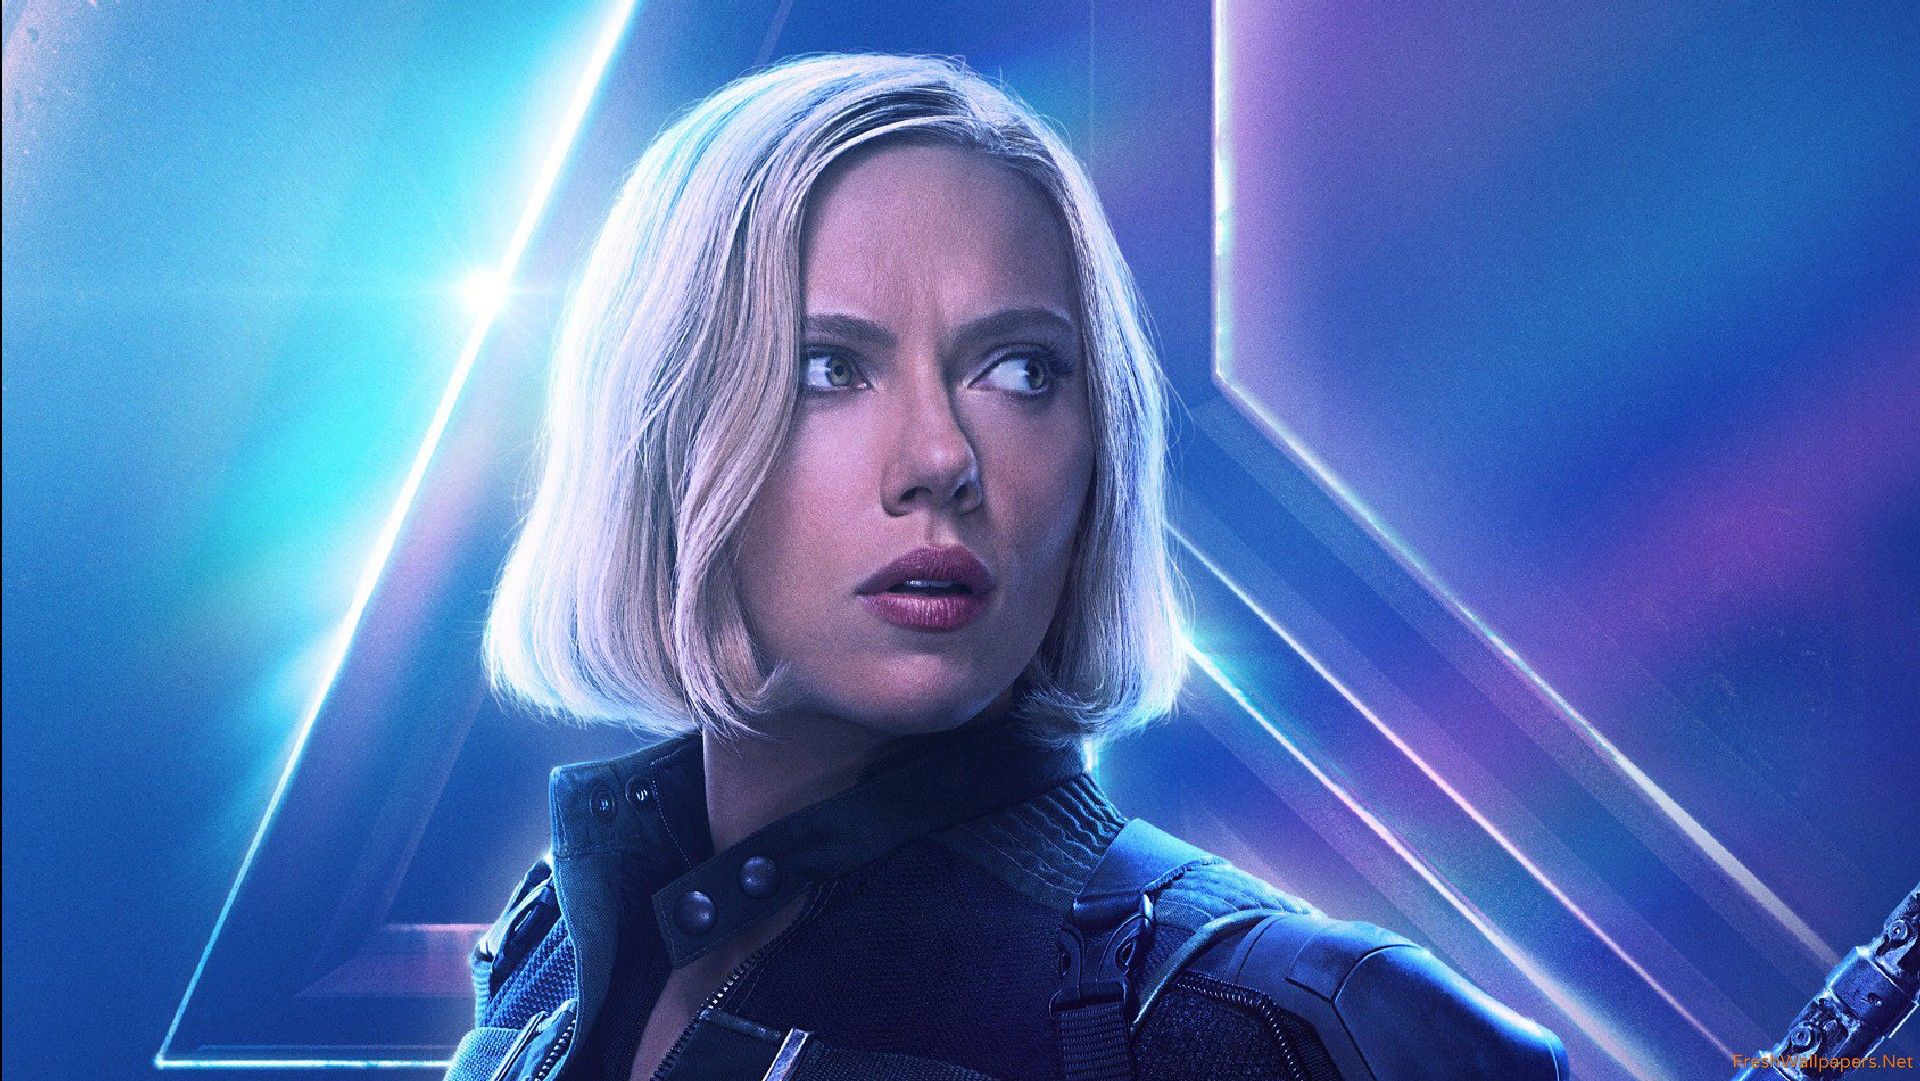 Black Widow In Avengers Infinity War New Poster Wallpaper Download